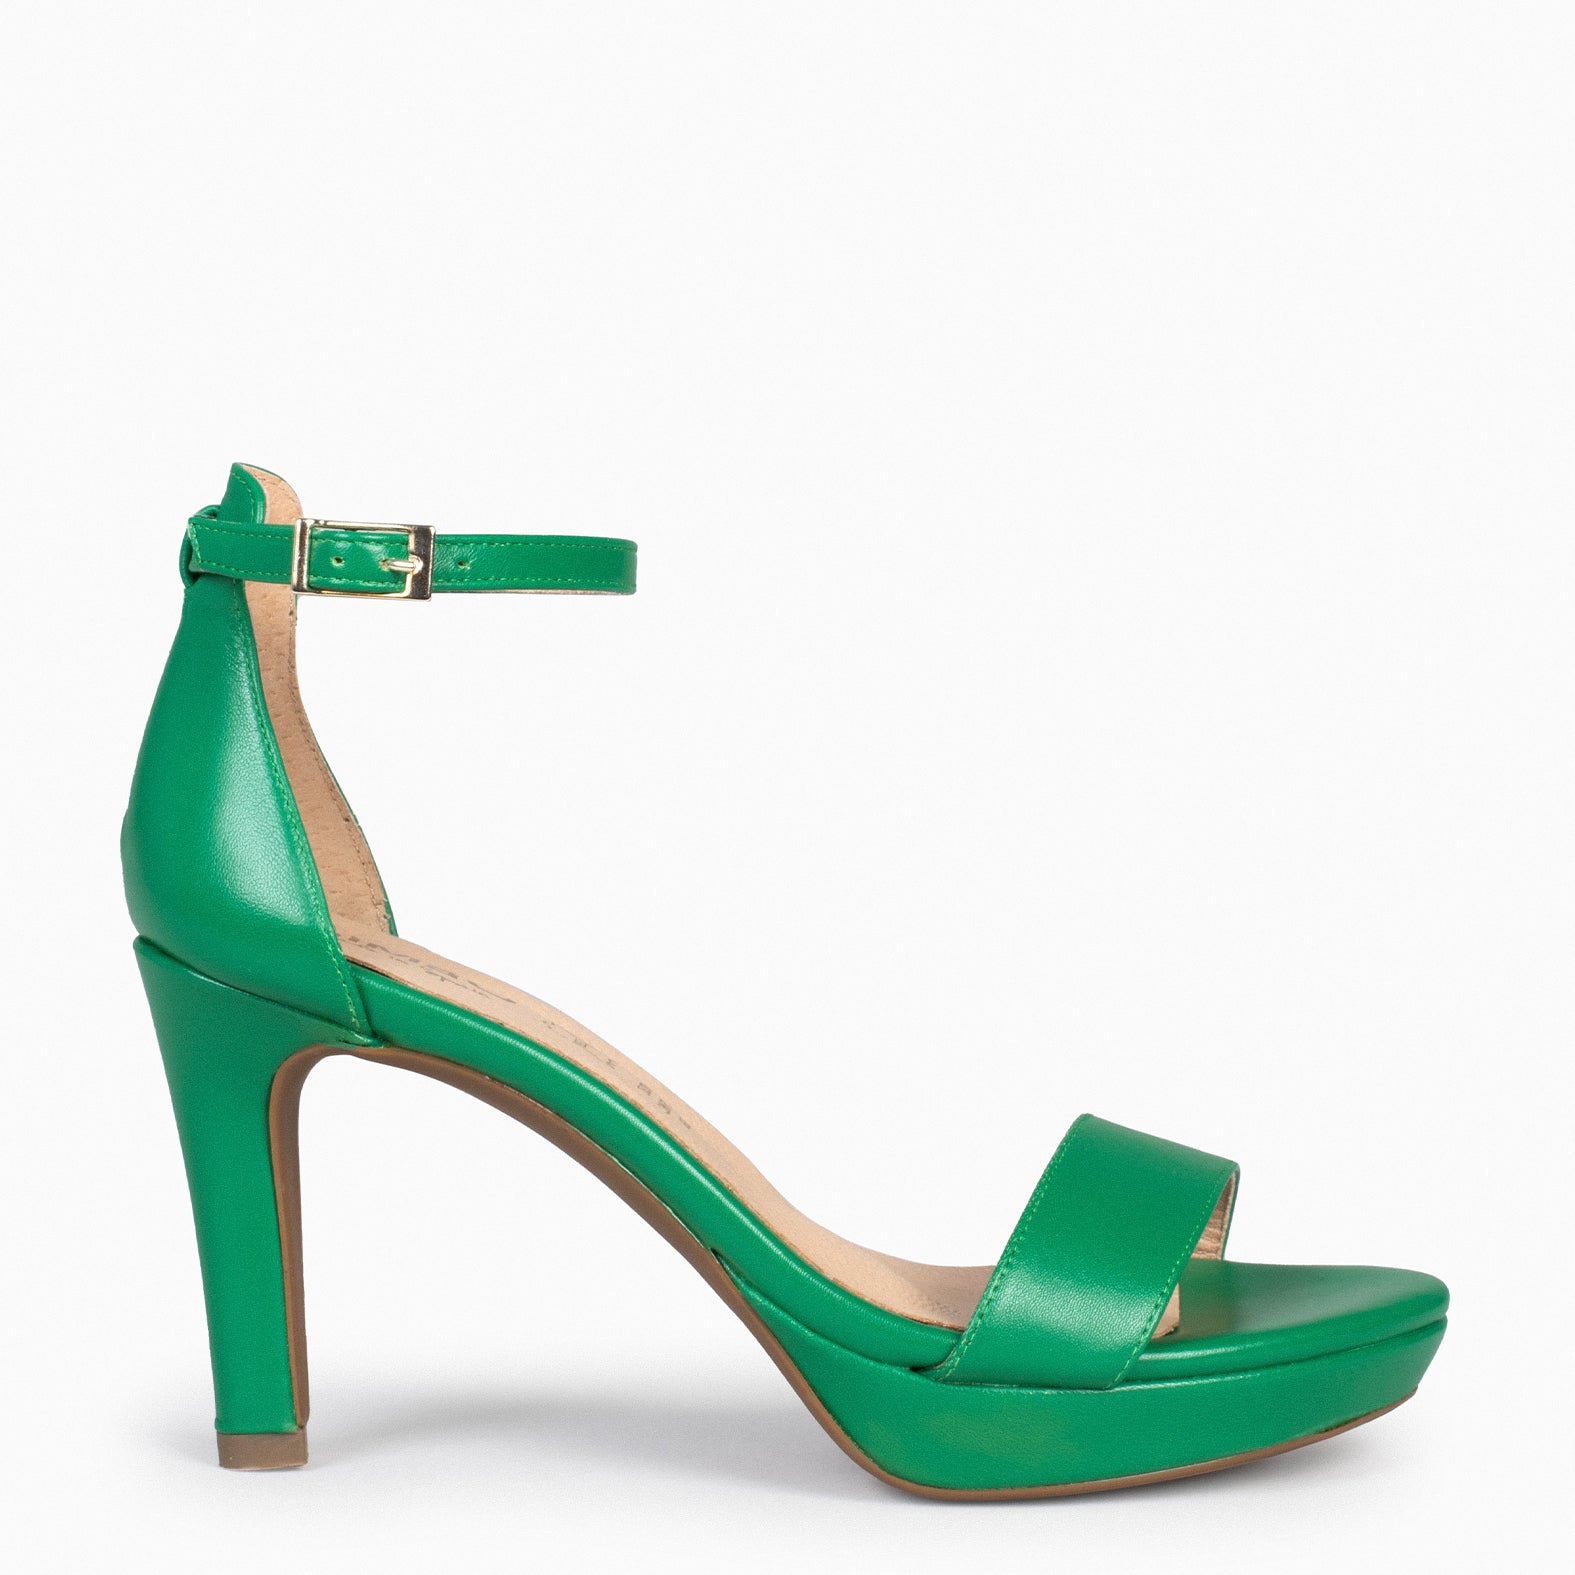 PARTY – DARK GREEN high-heeled platform sandals